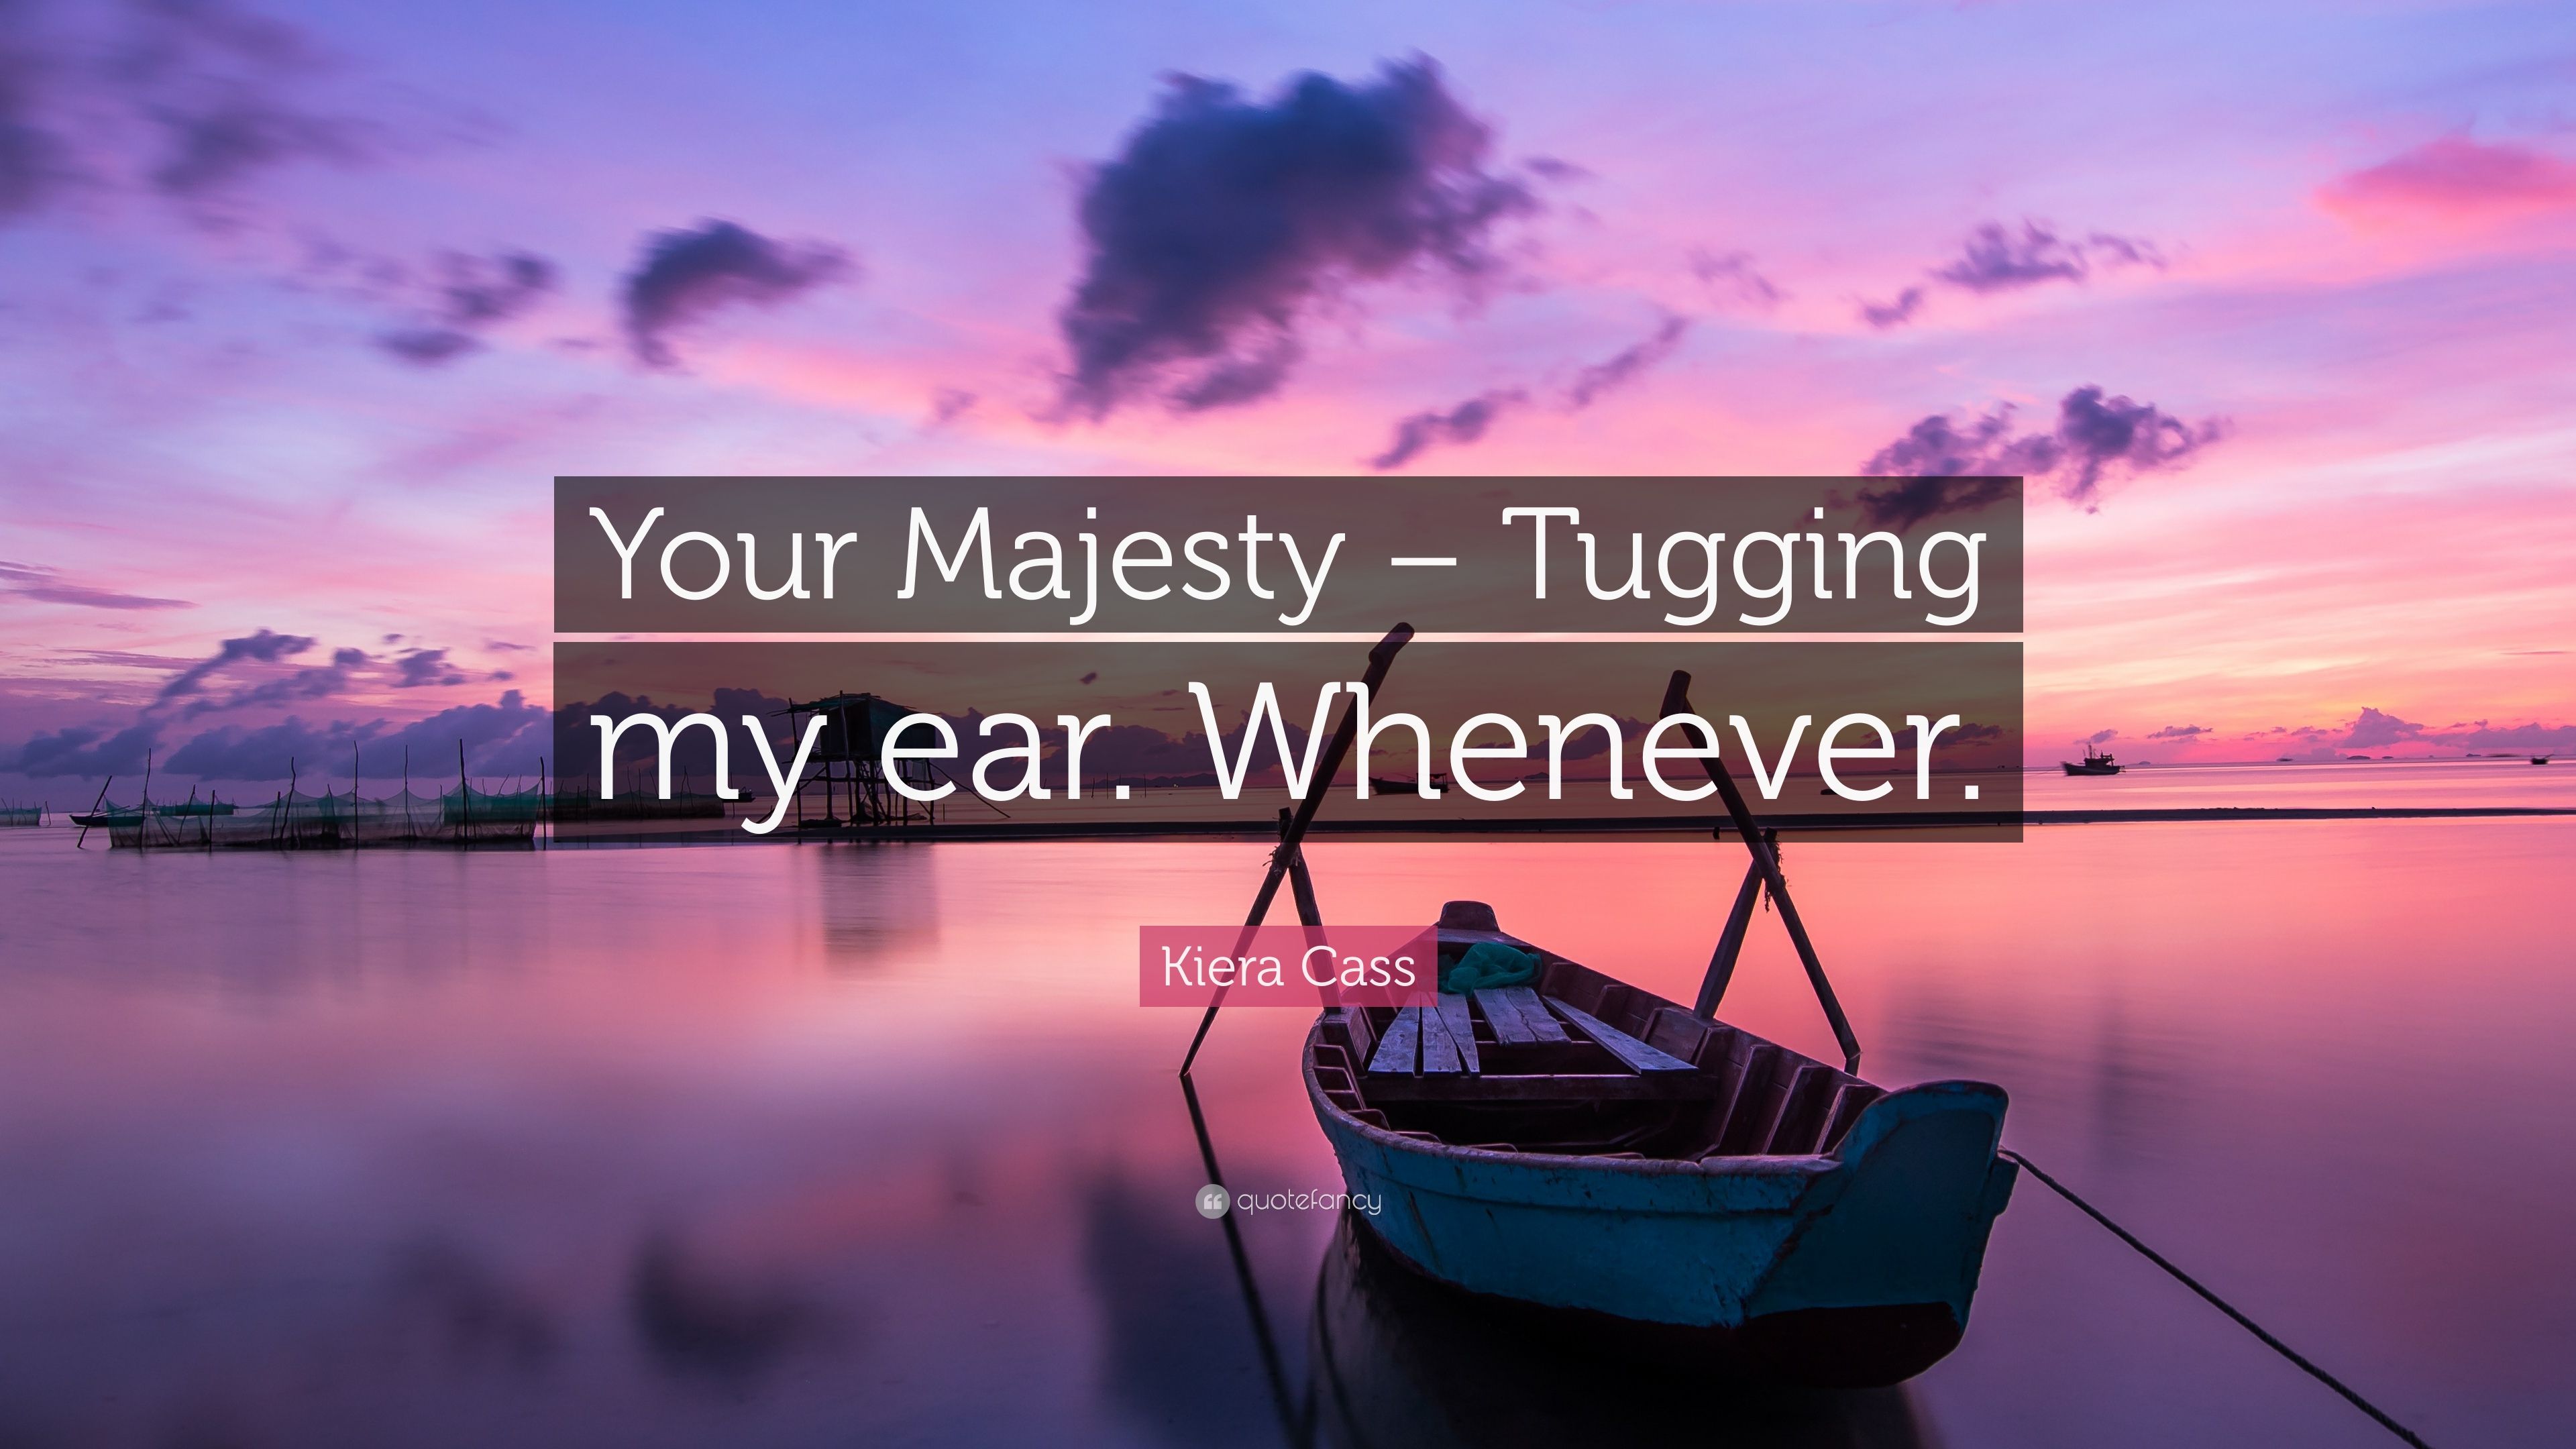 Kiera Cass Quote: “Your Majesty